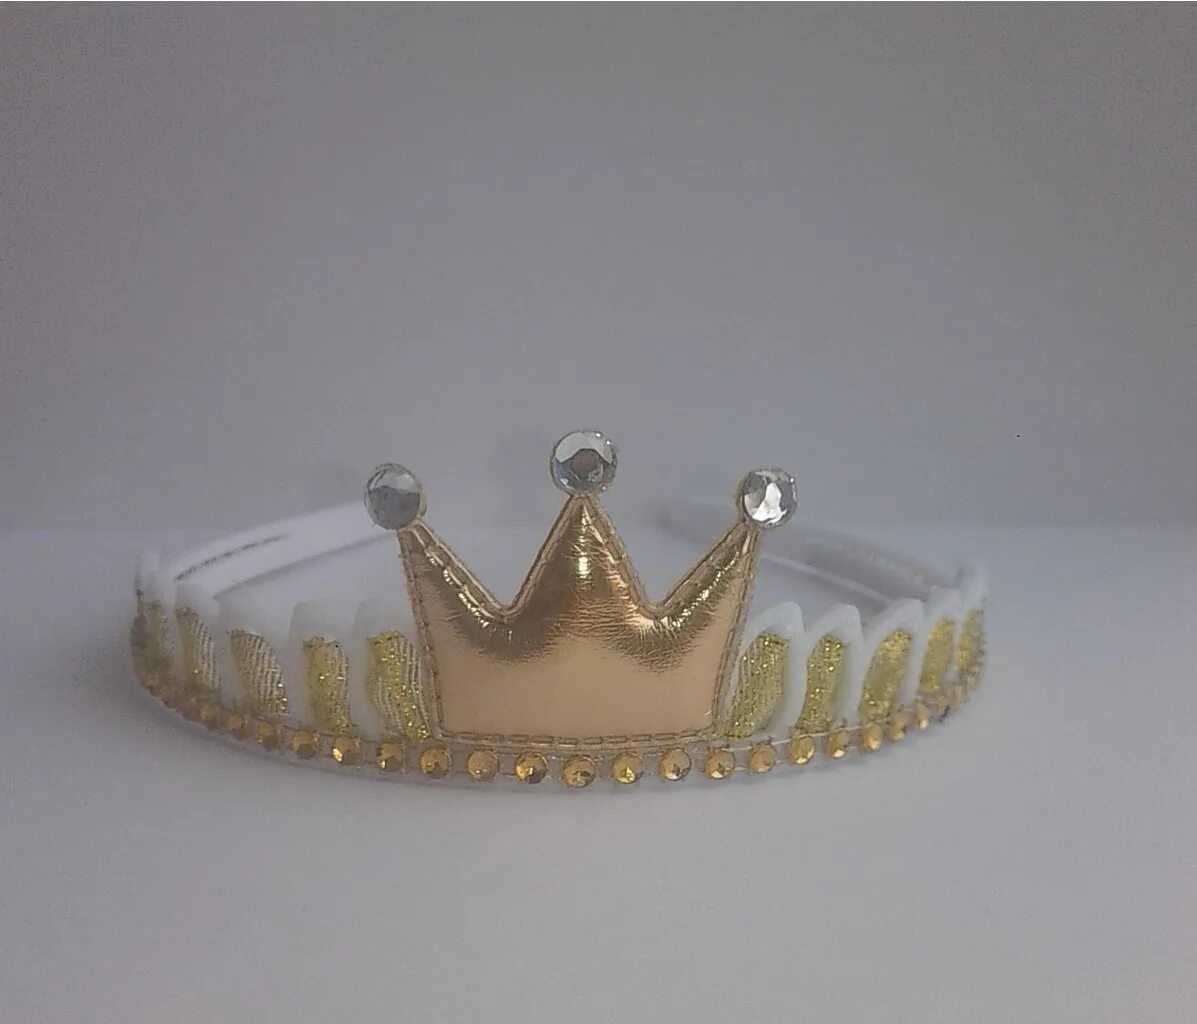 Корона 5 лет. Корона на ободке. Ободок корона золото. Корона детская на резинке. Корона диадема на резинке детская.